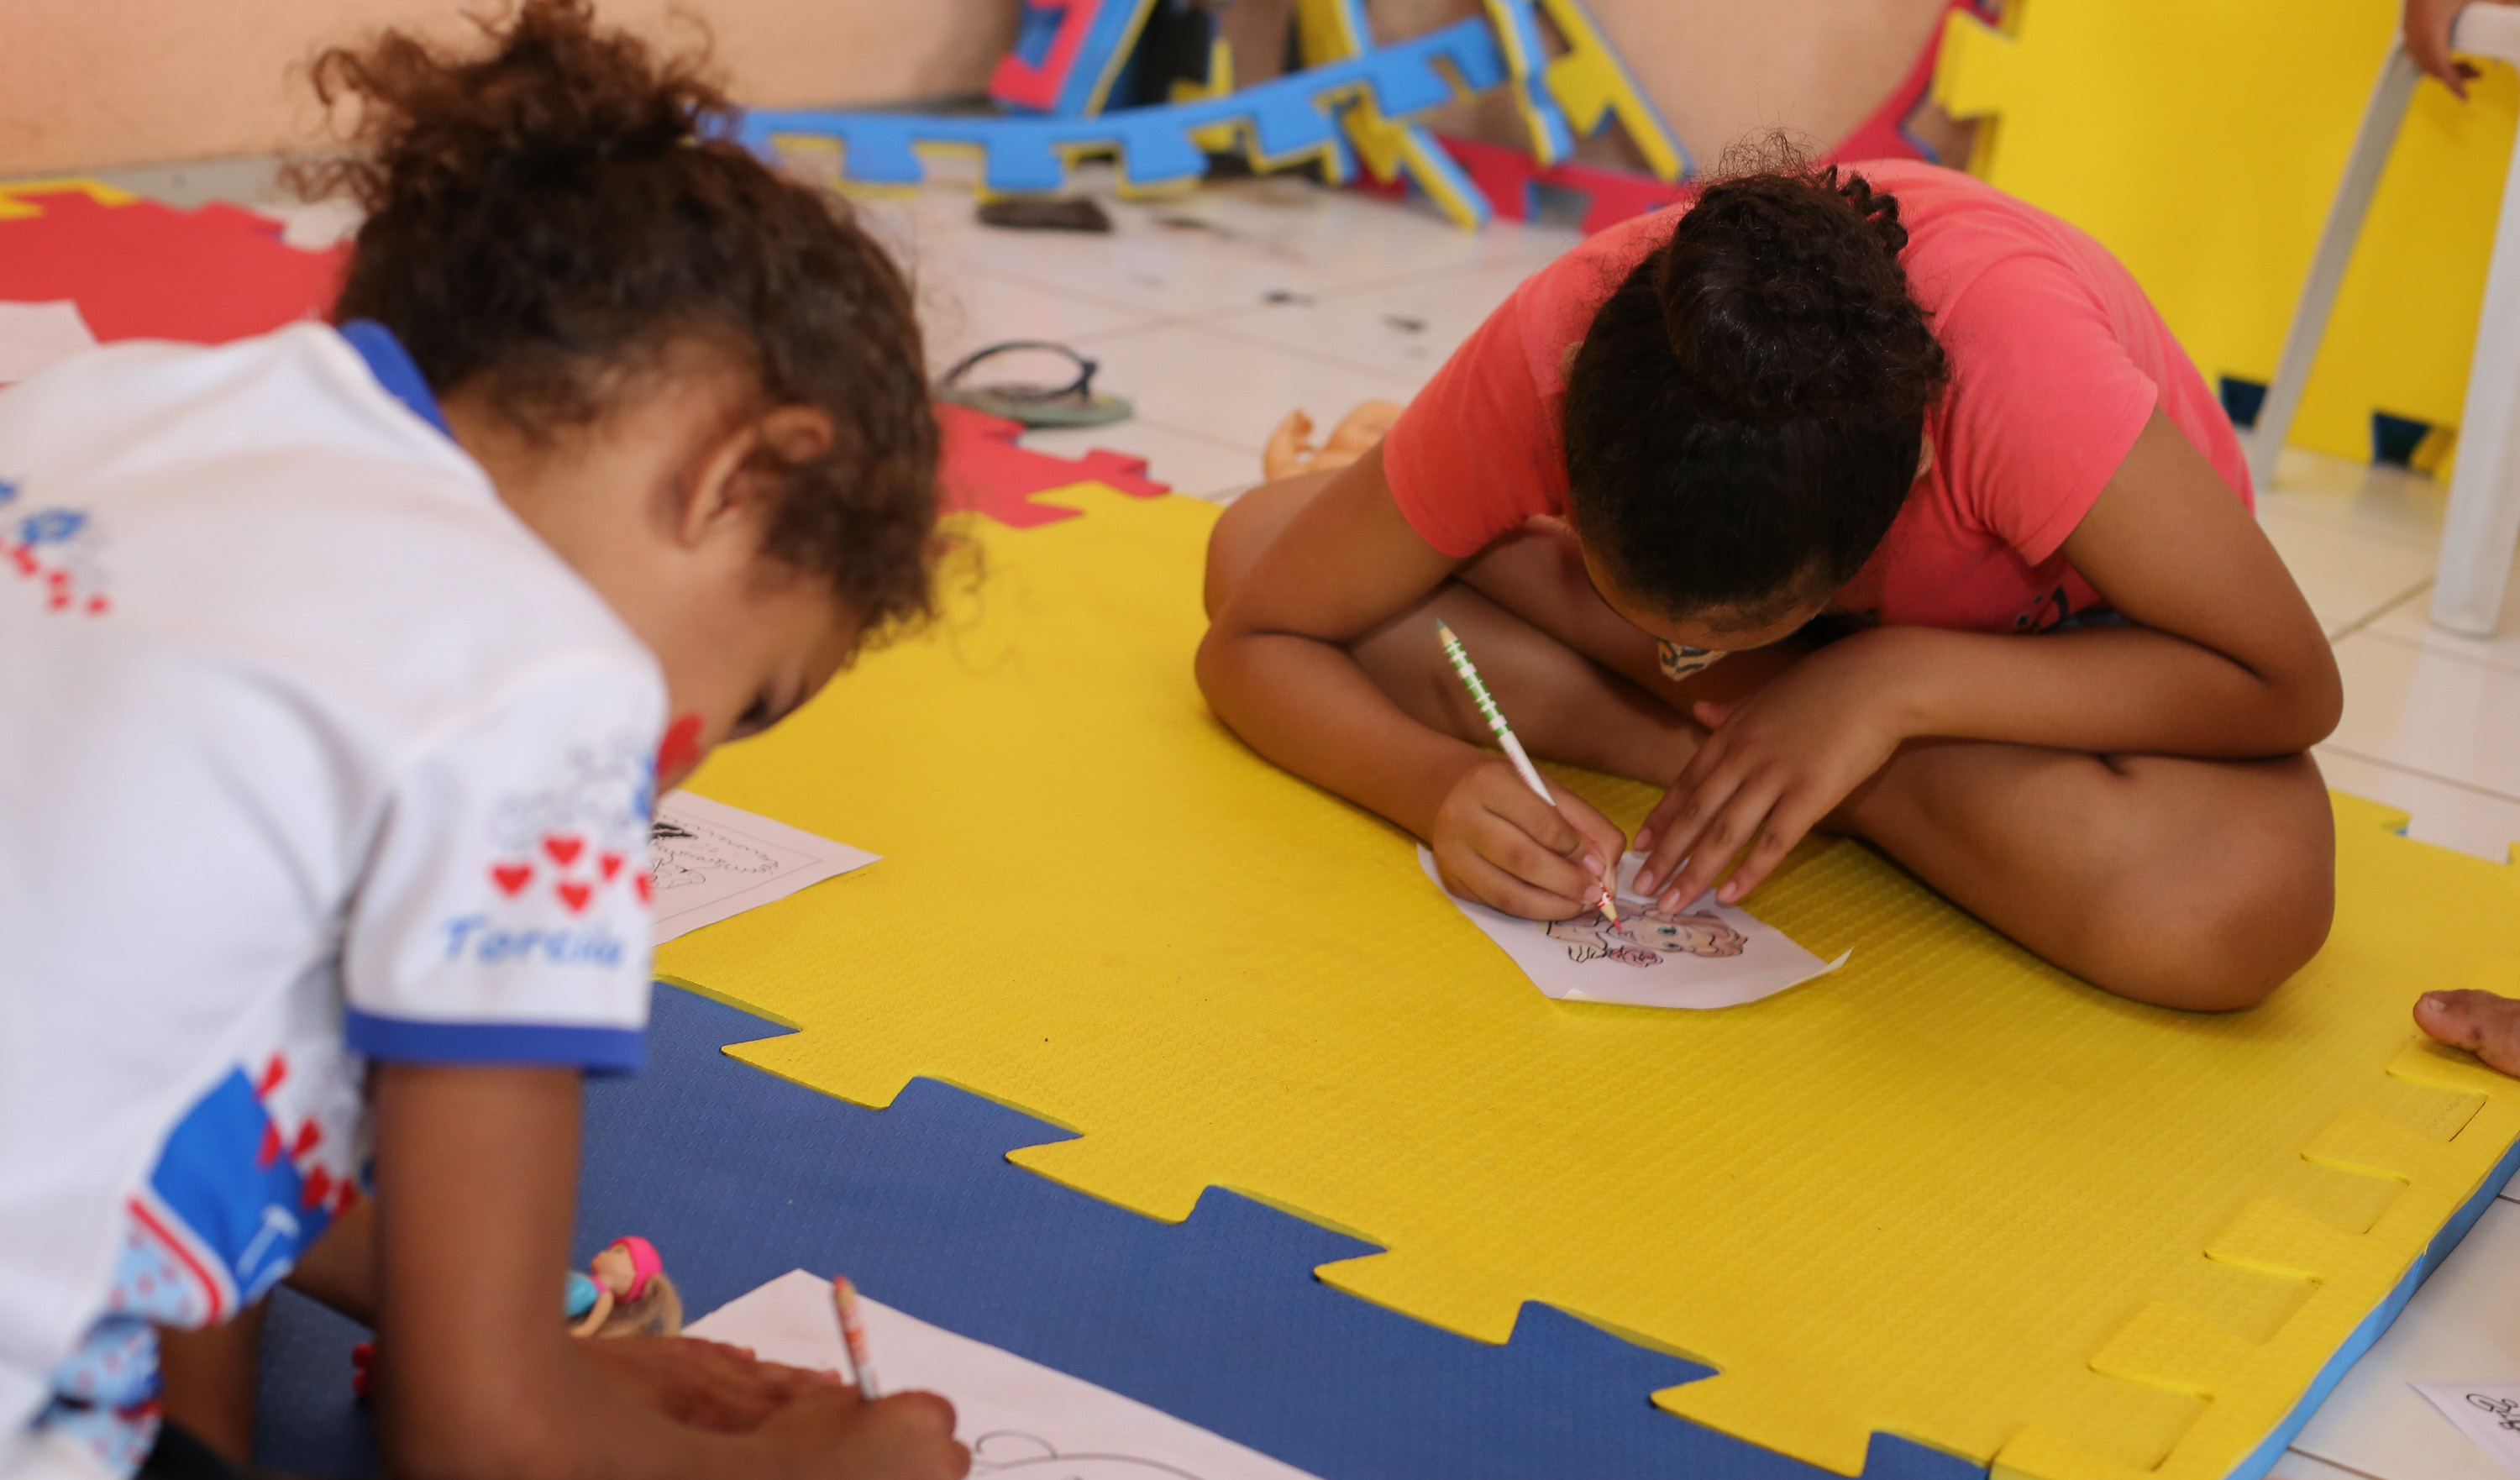 duas crianças, de máscara, pintam um desenho, sentadas sobre um tapete de brincadeiras colorido de amarelo, azul e vermelho